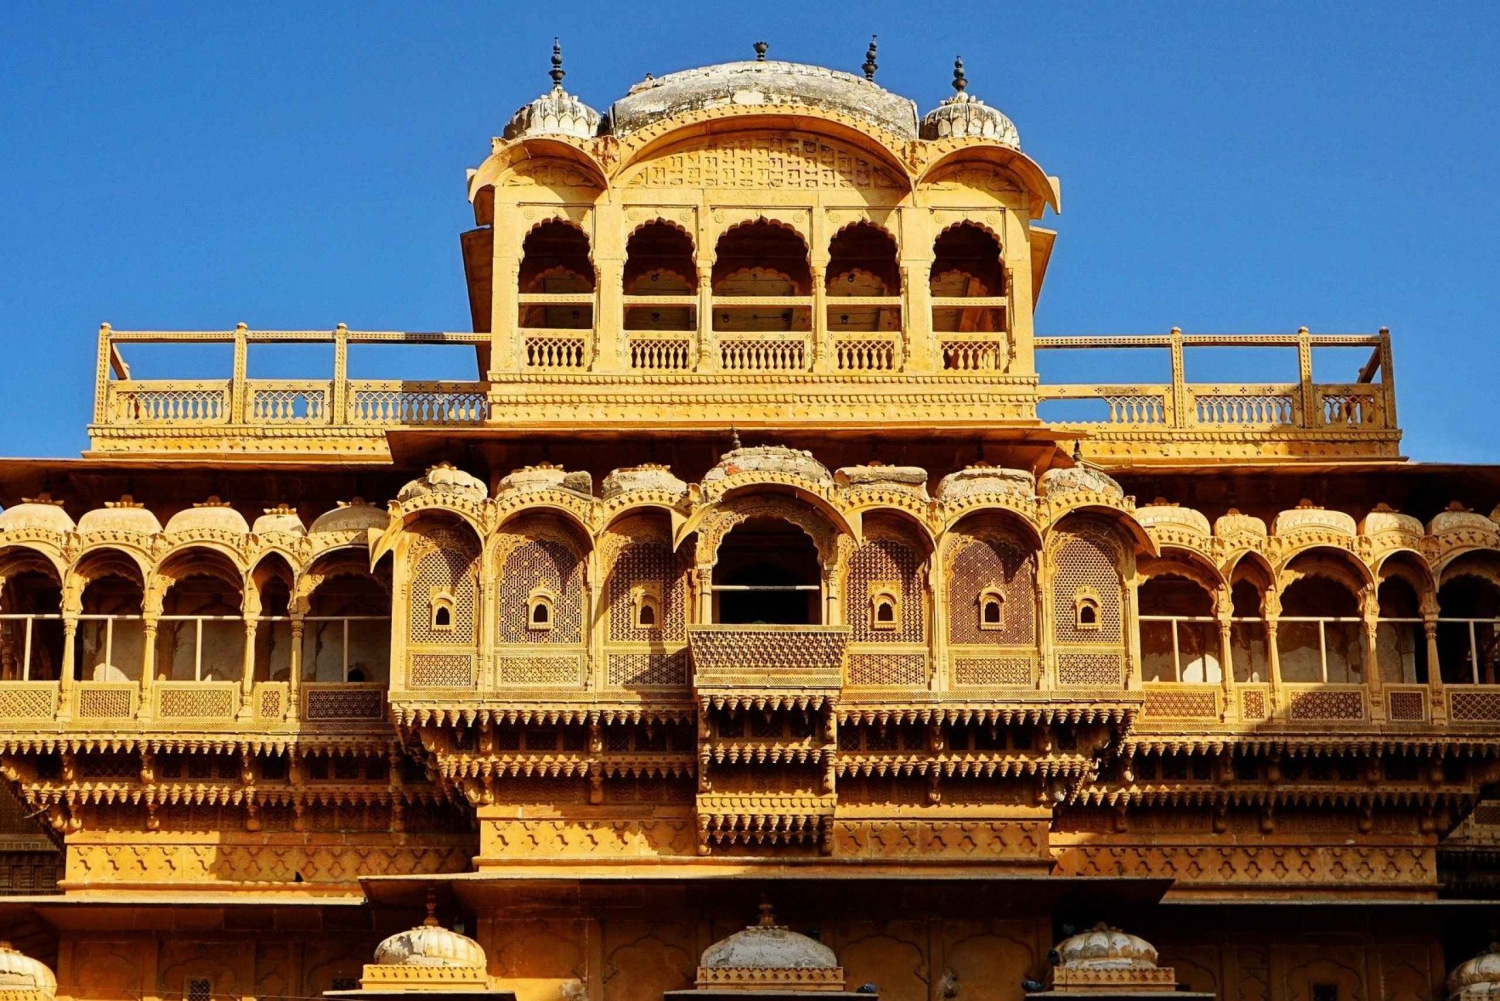 Recorrido turístico de 4 días por Jaisalmer